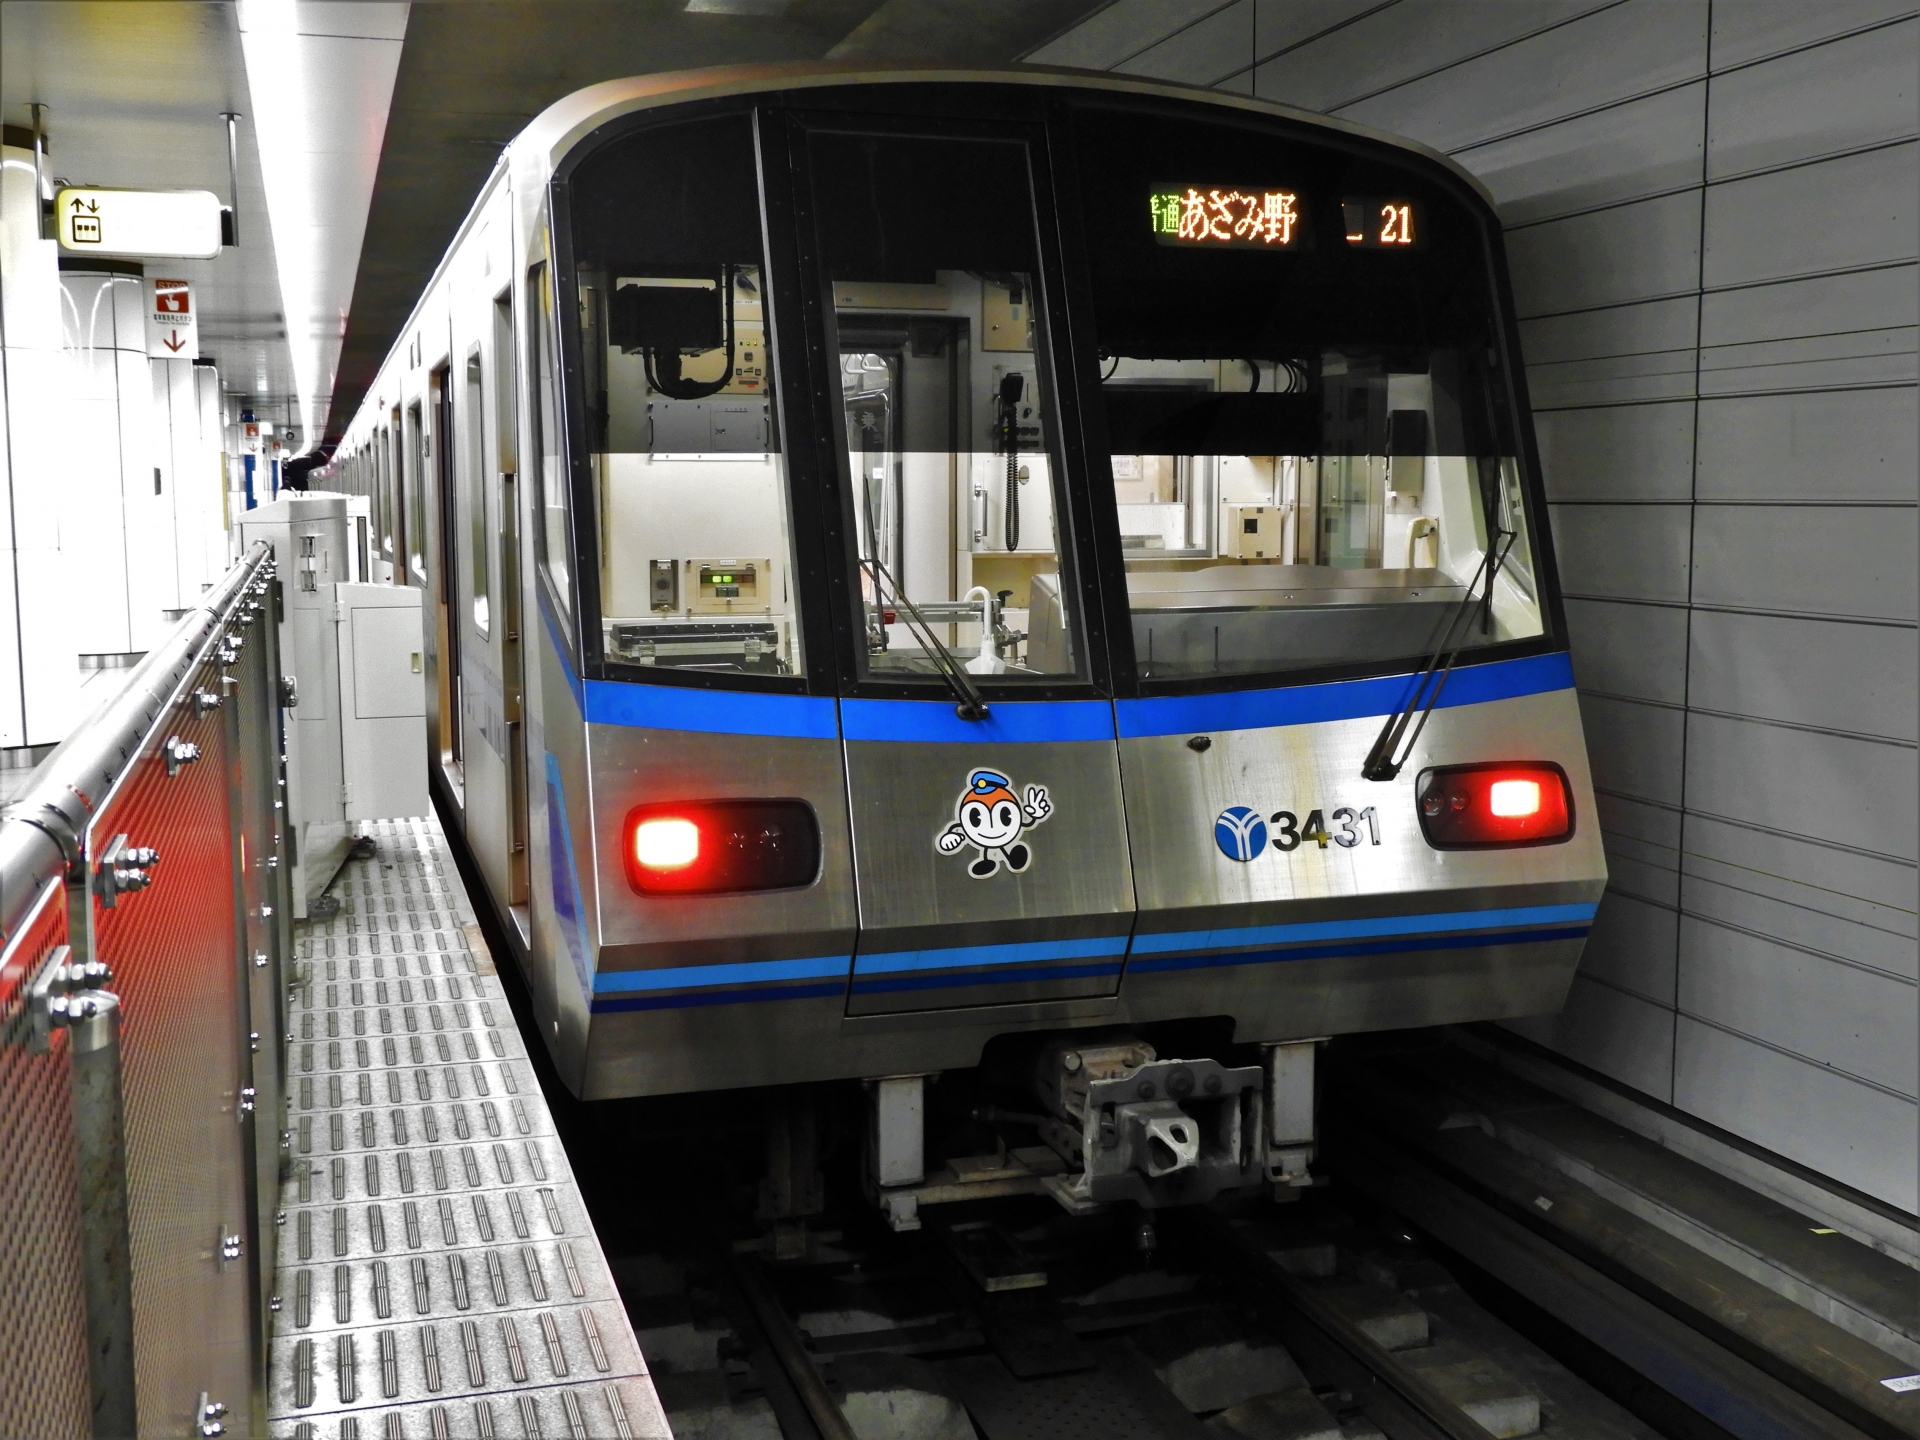 横浜市内を中心に運行する、横浜市営地下鉄。ブルーラインとグリーンラインの2線があり、両線で未来に向けた取り組みが行われている。